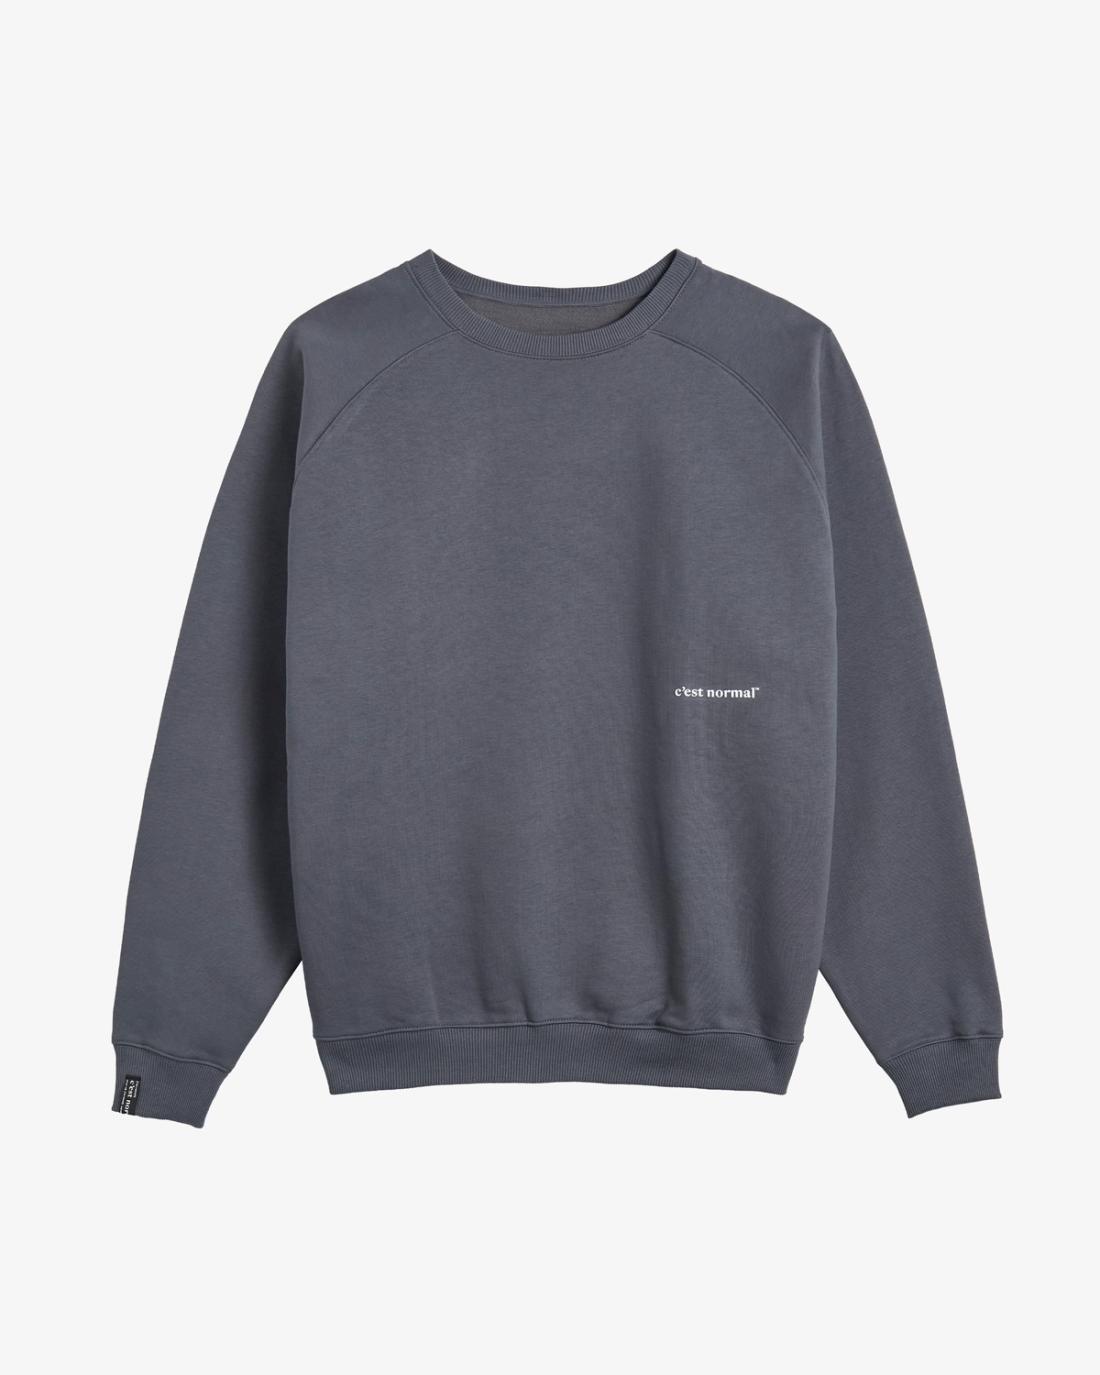 The Sweatshirt 